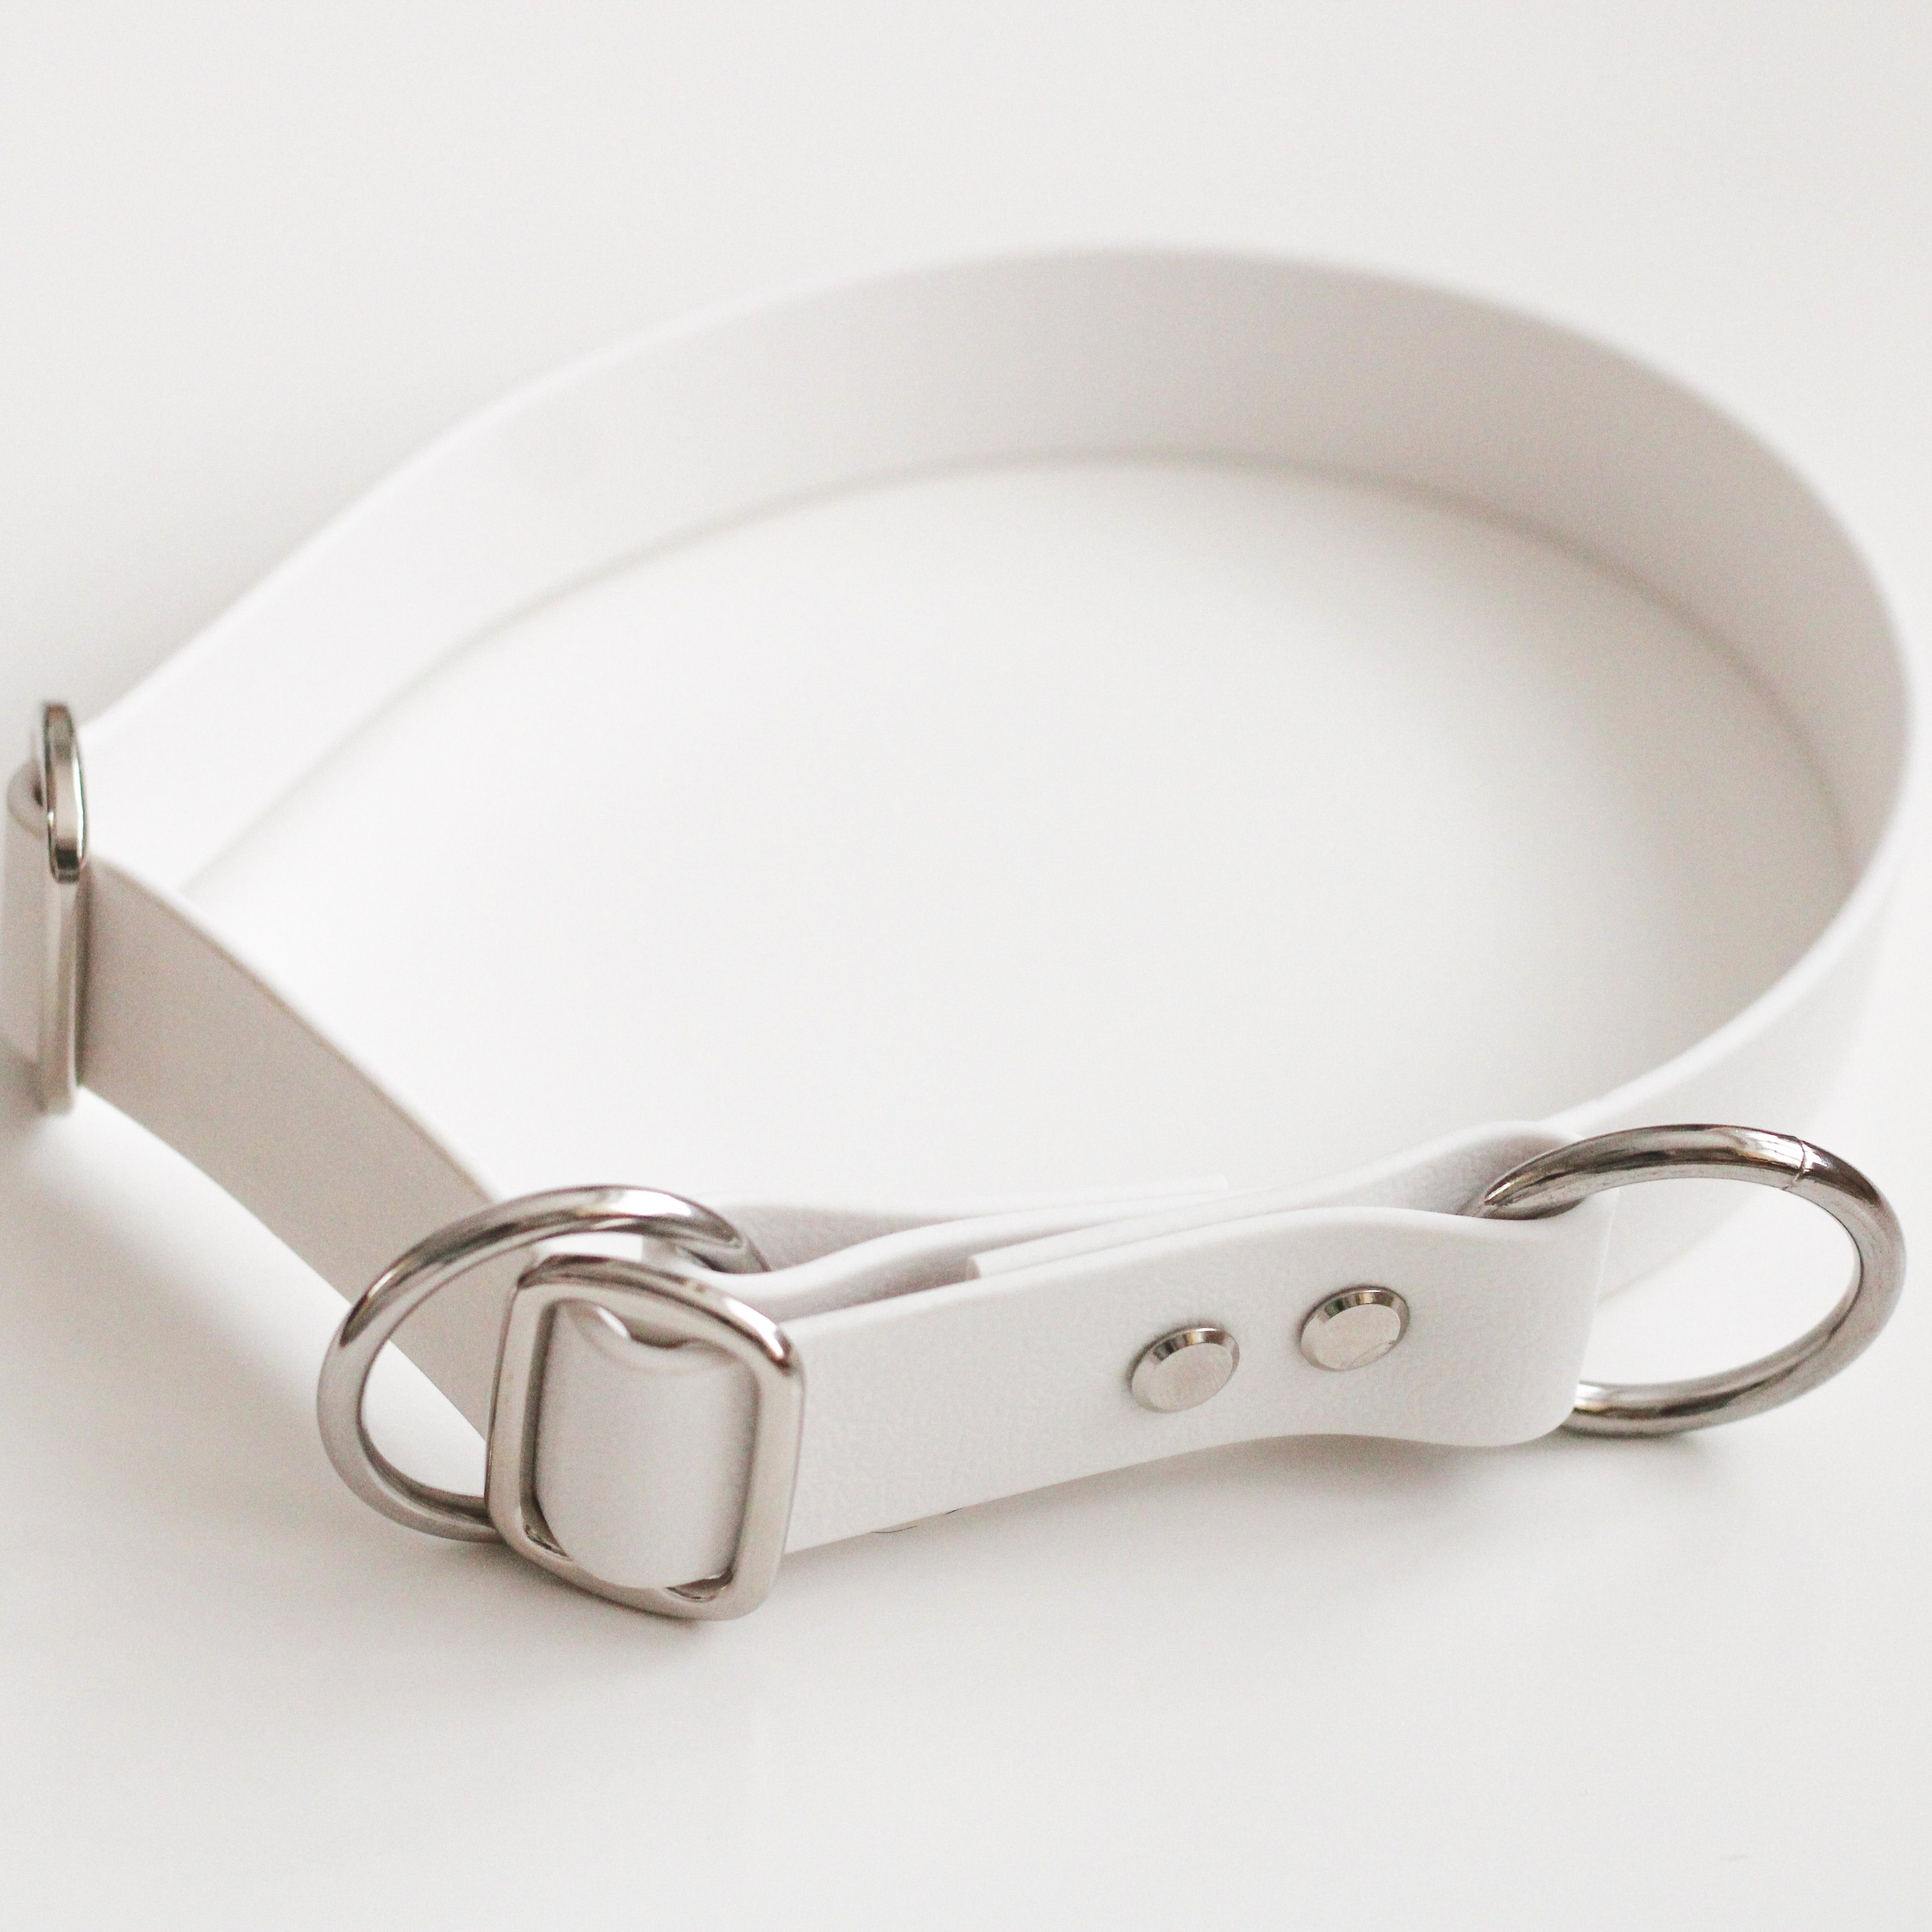 PETLOVEDE Hunde-Halsband Mitwachsendes Hundehalsband - Milimetergenau an den Hals anpassbar